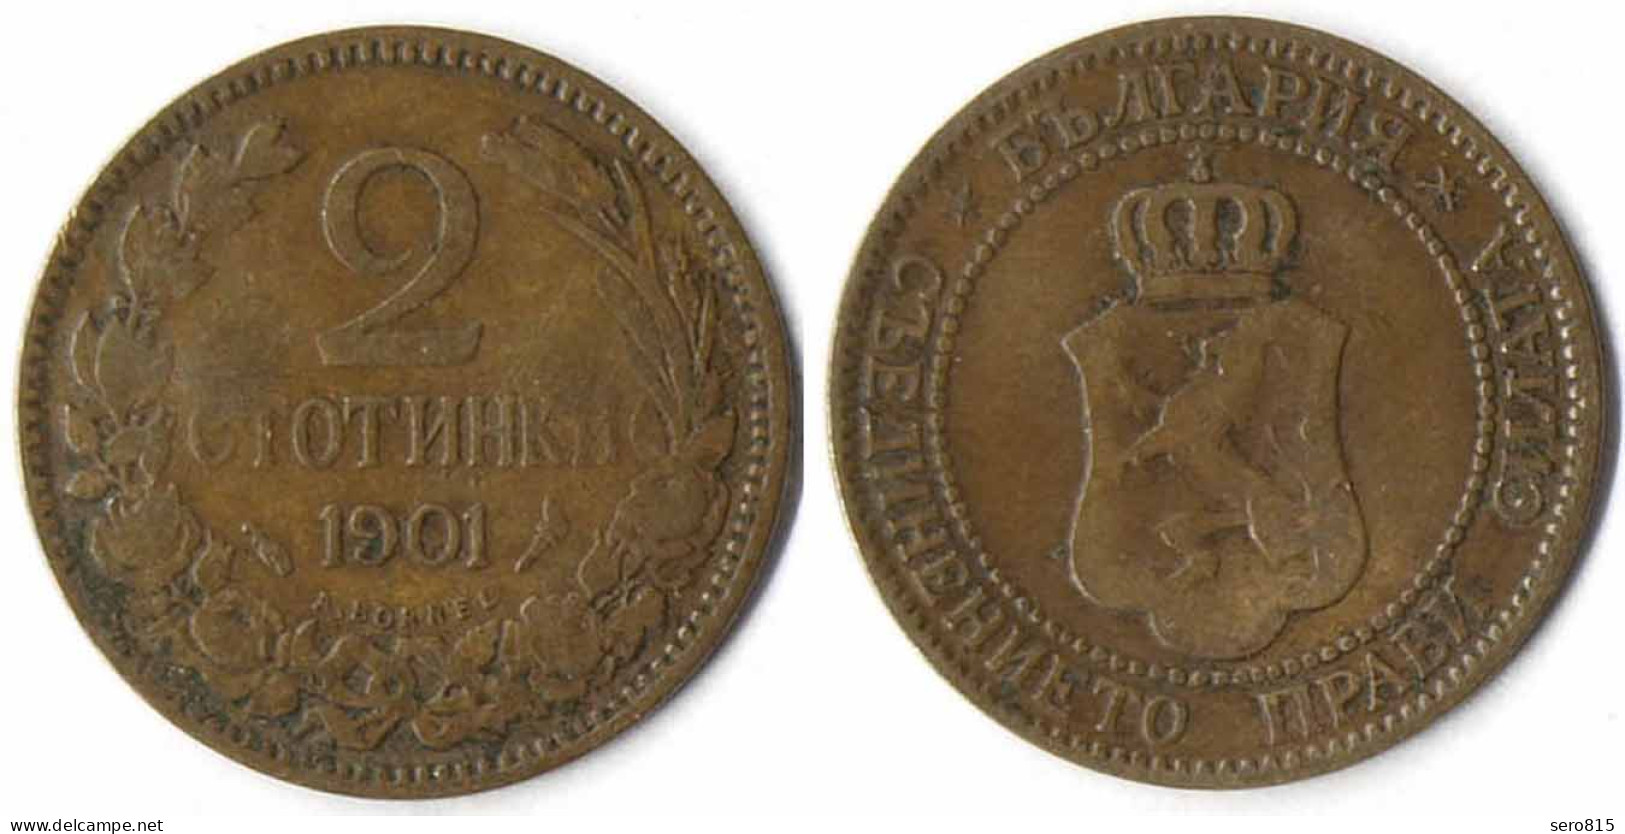 Bulgarien - Bulgaria 2 Stotinki Münze 1901   (r1184 - Sonstige – Europa